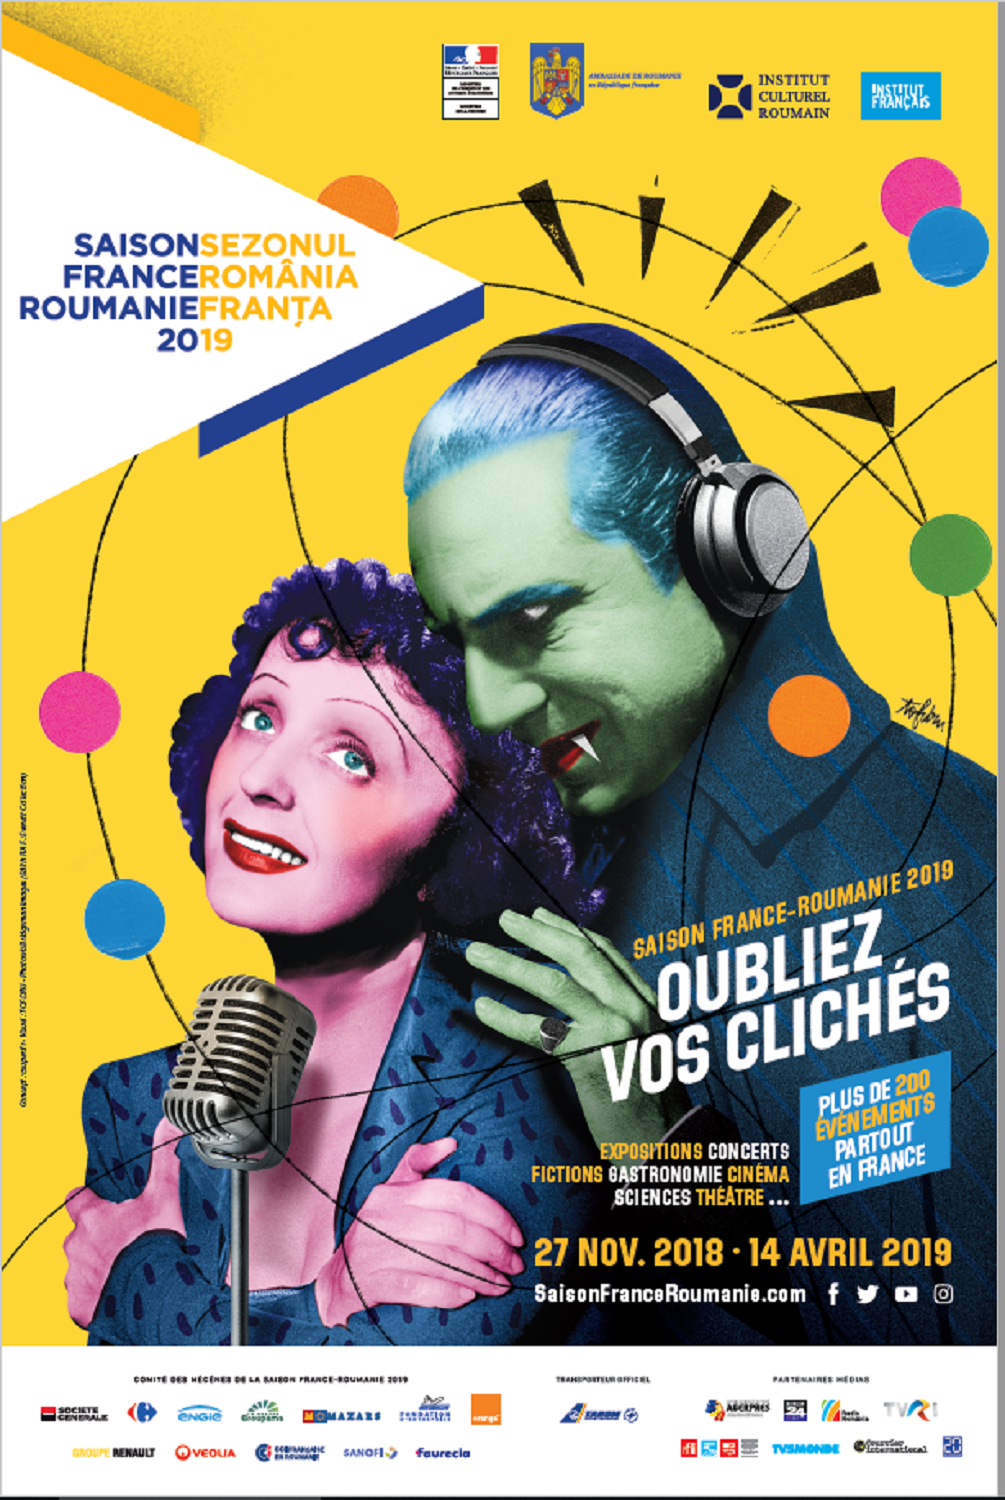 L’affiche française montre la chanteuse Edith Piaf dans les bras de Dracula.